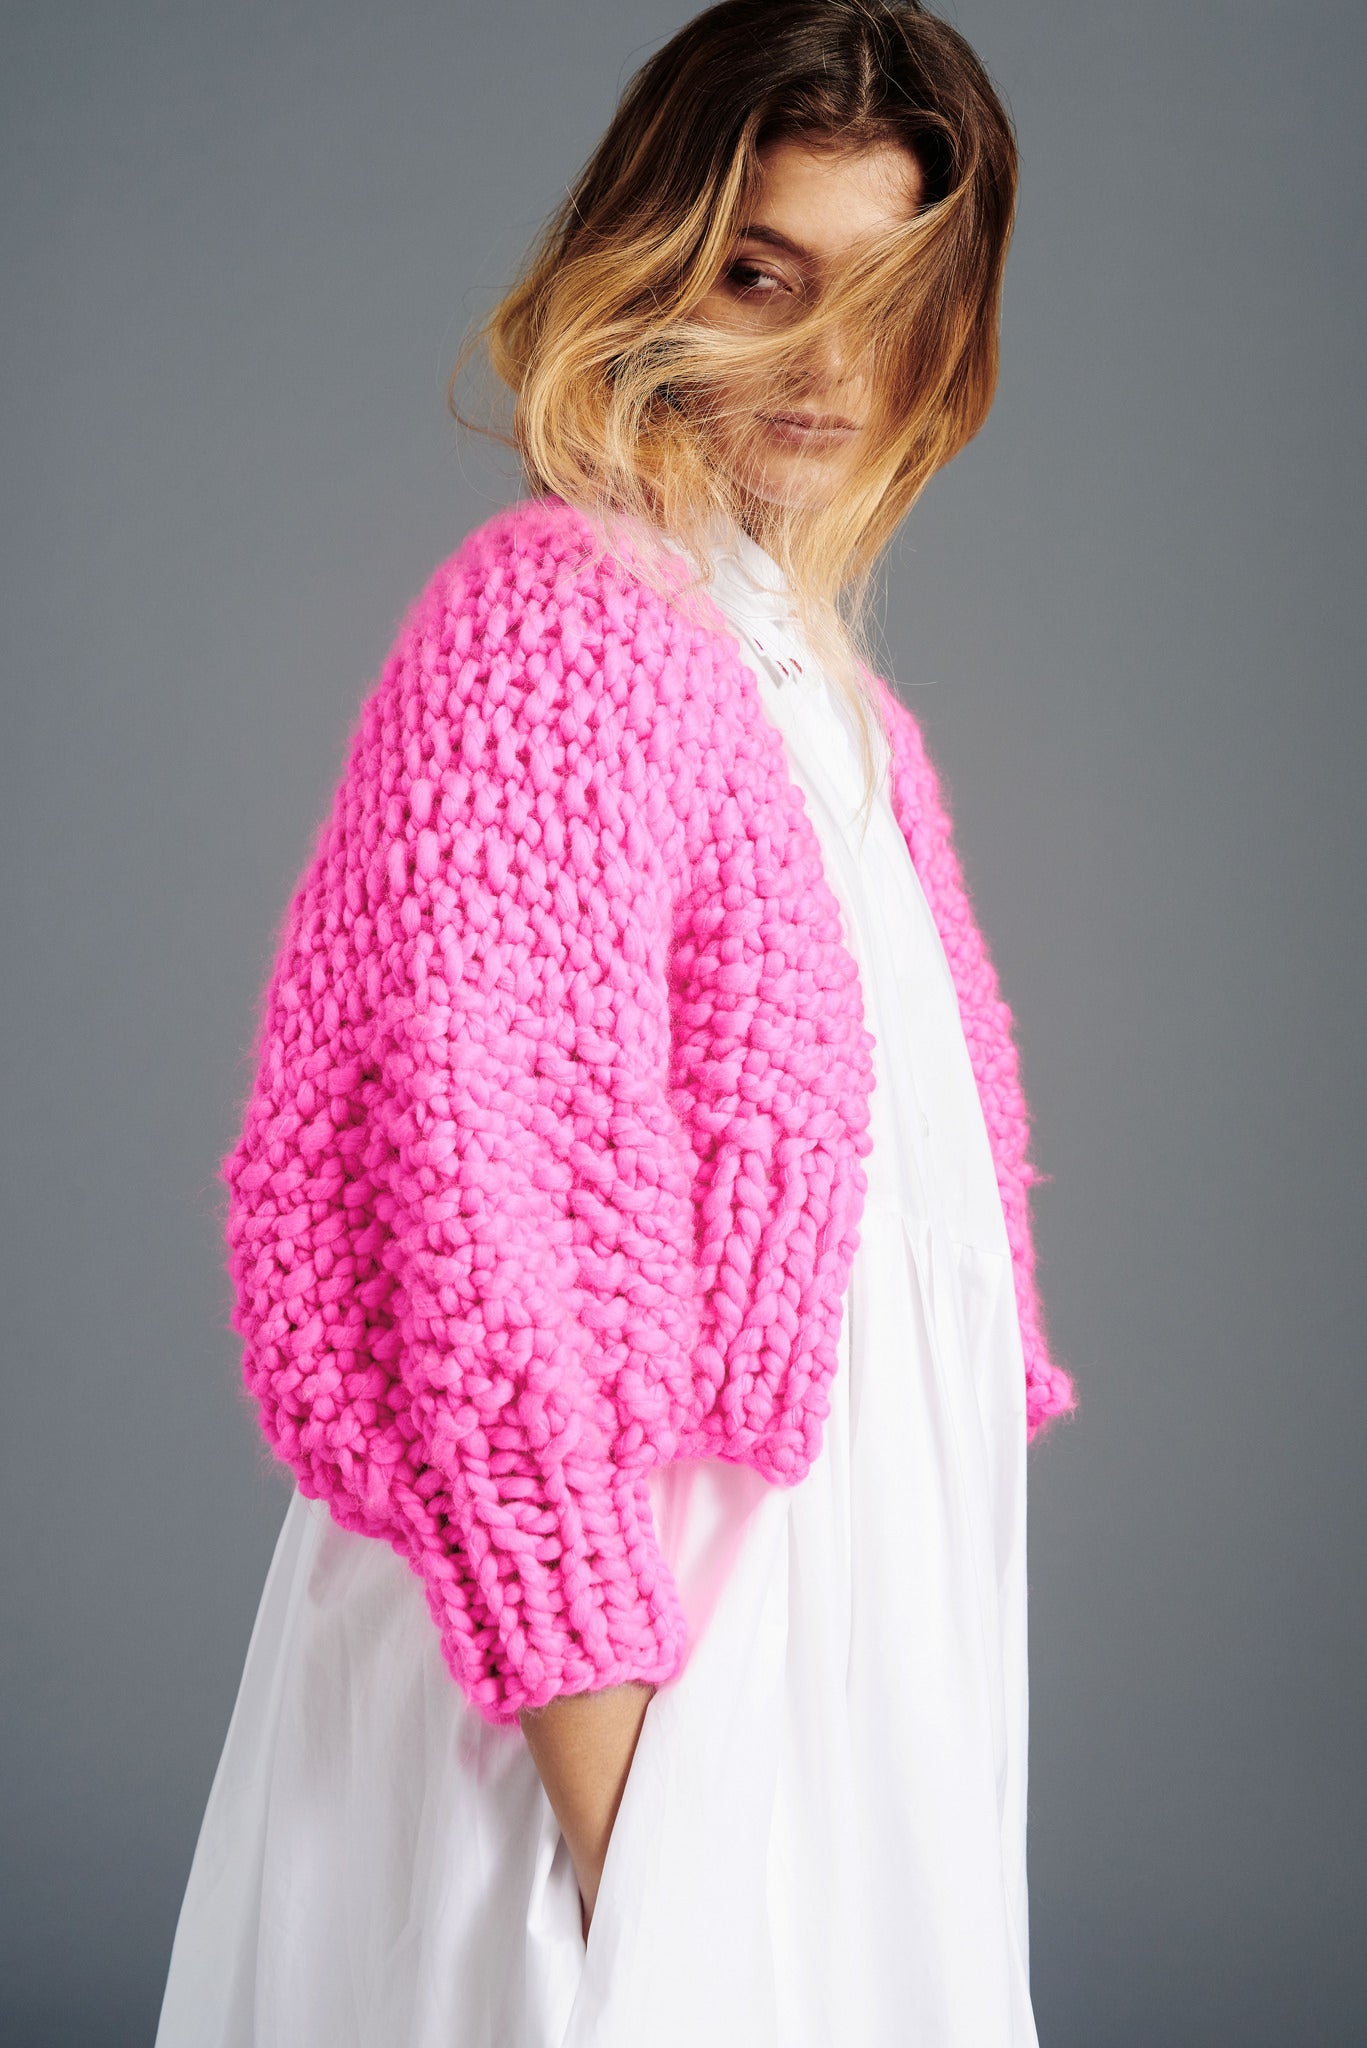 MERINO Handknit Cropped Sweater - Blush Pink